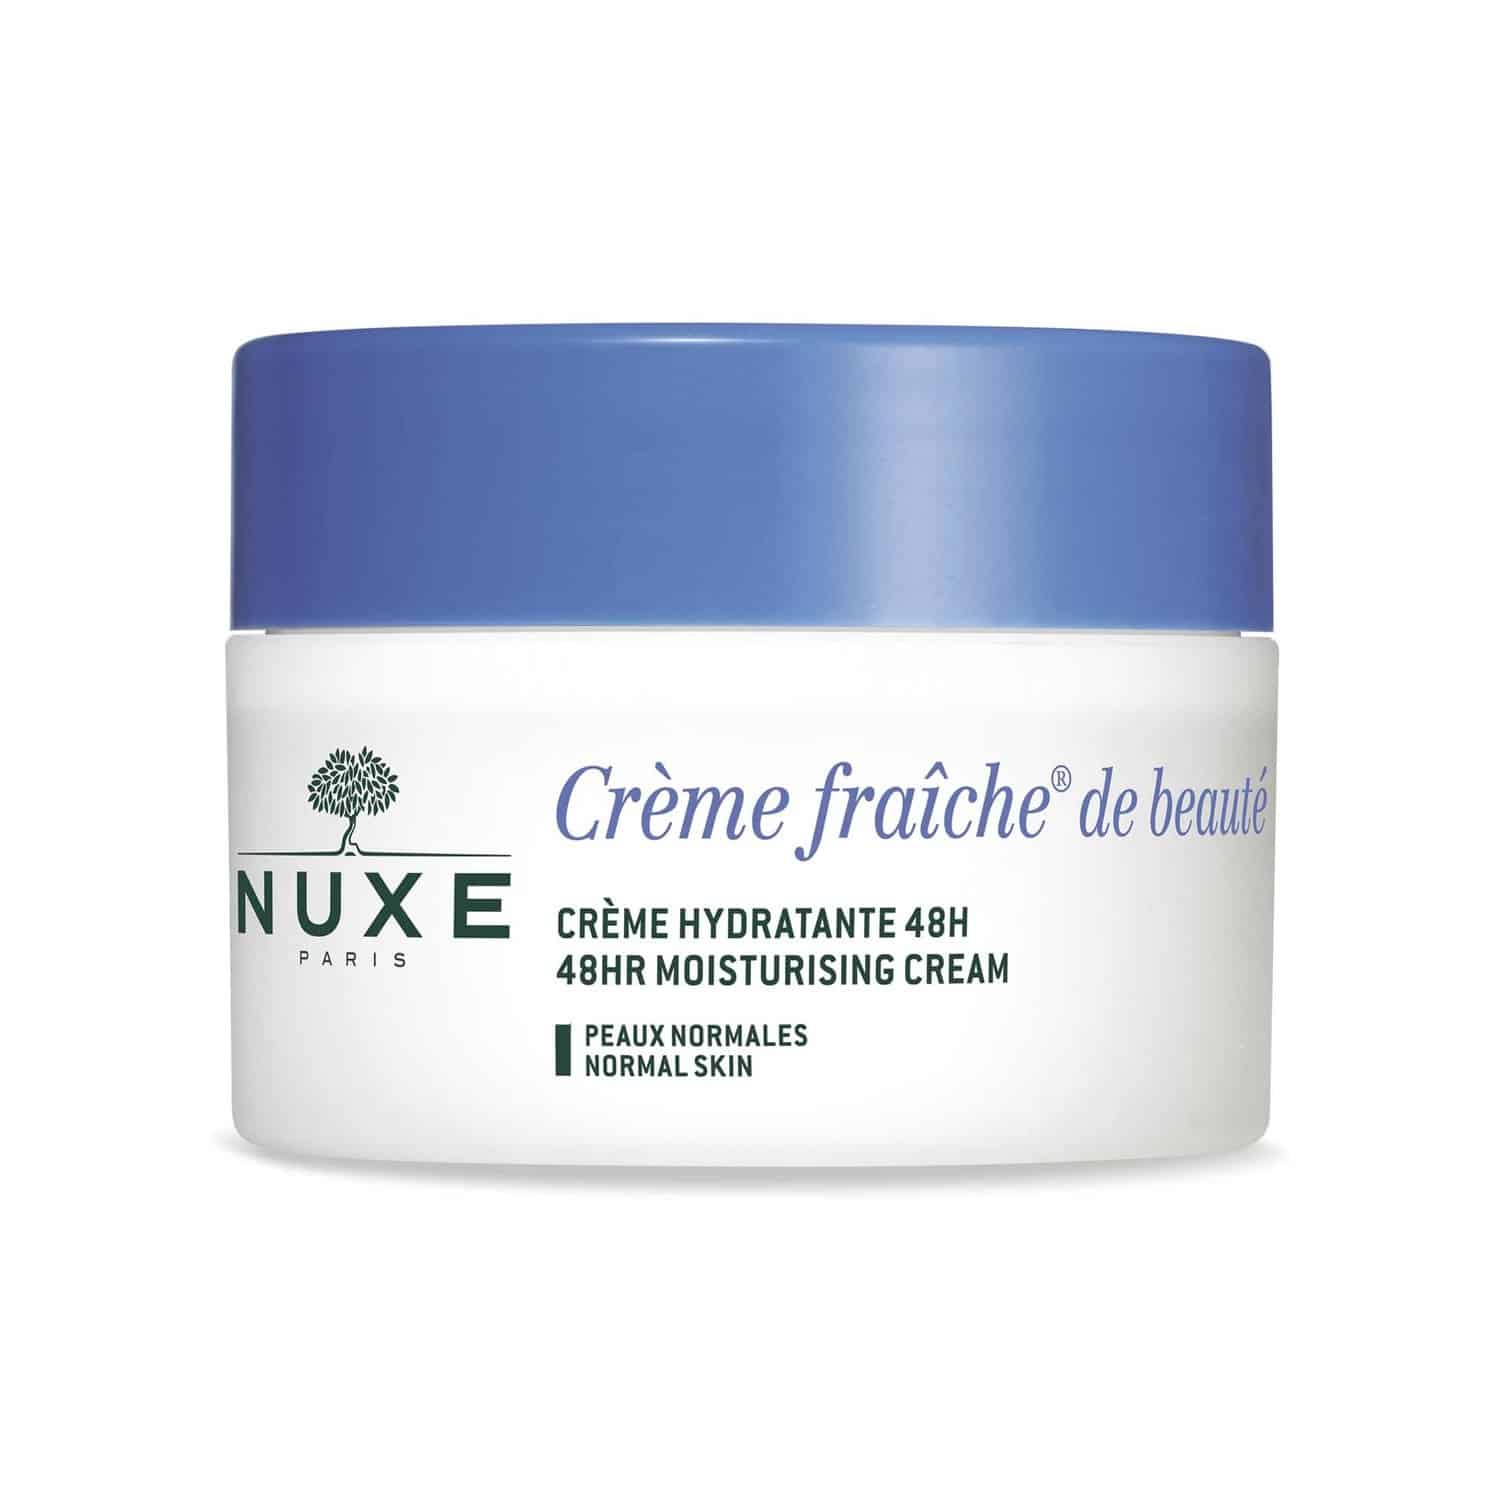 Nuxe Creme Fraiche 48H Moisturising Cream 50ml